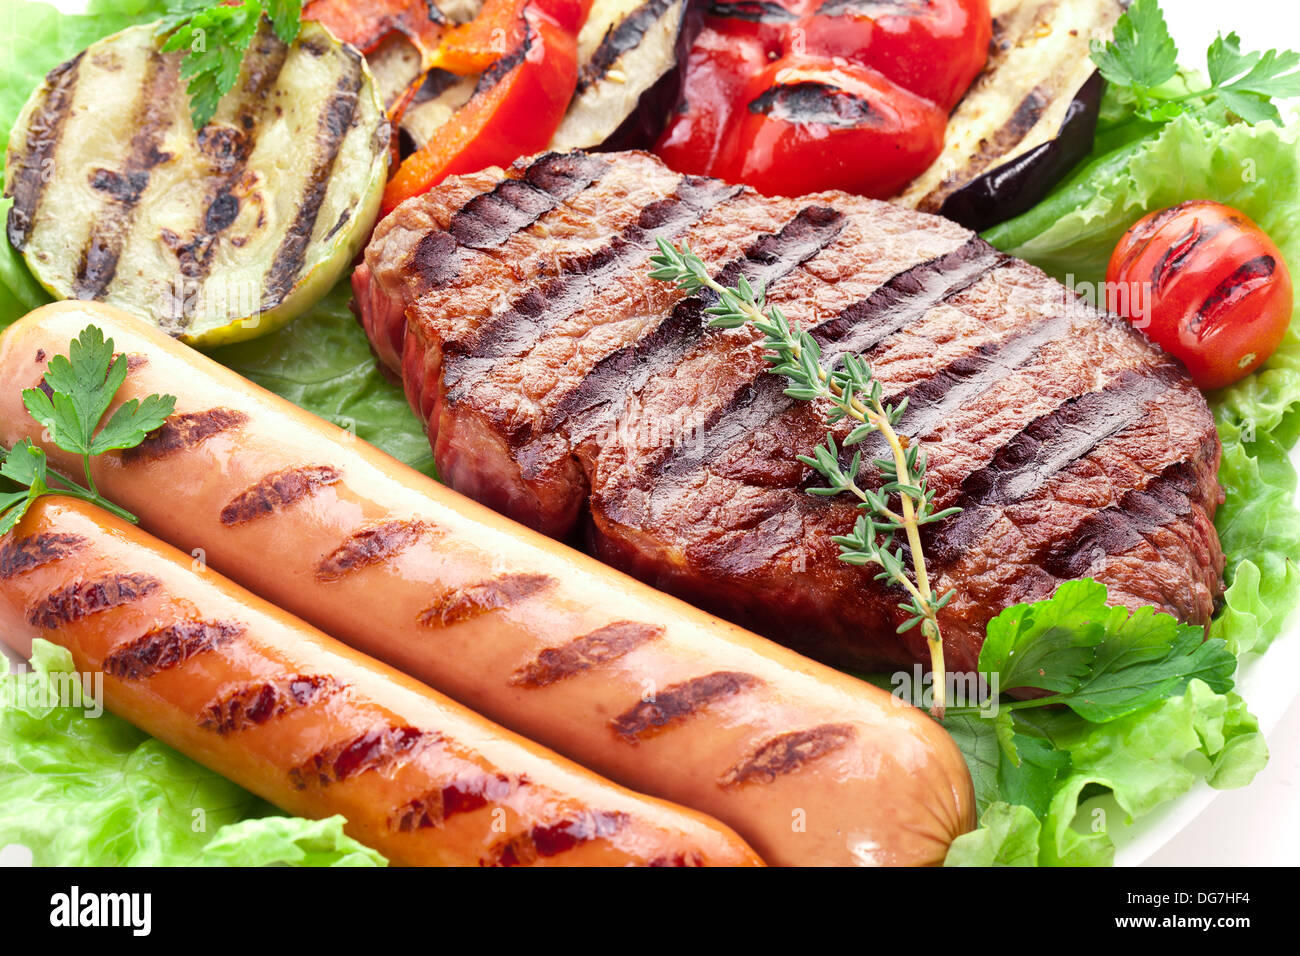 Le steak grillé, saucisses et légumes sur feuilles de laitue. Banque D'Images